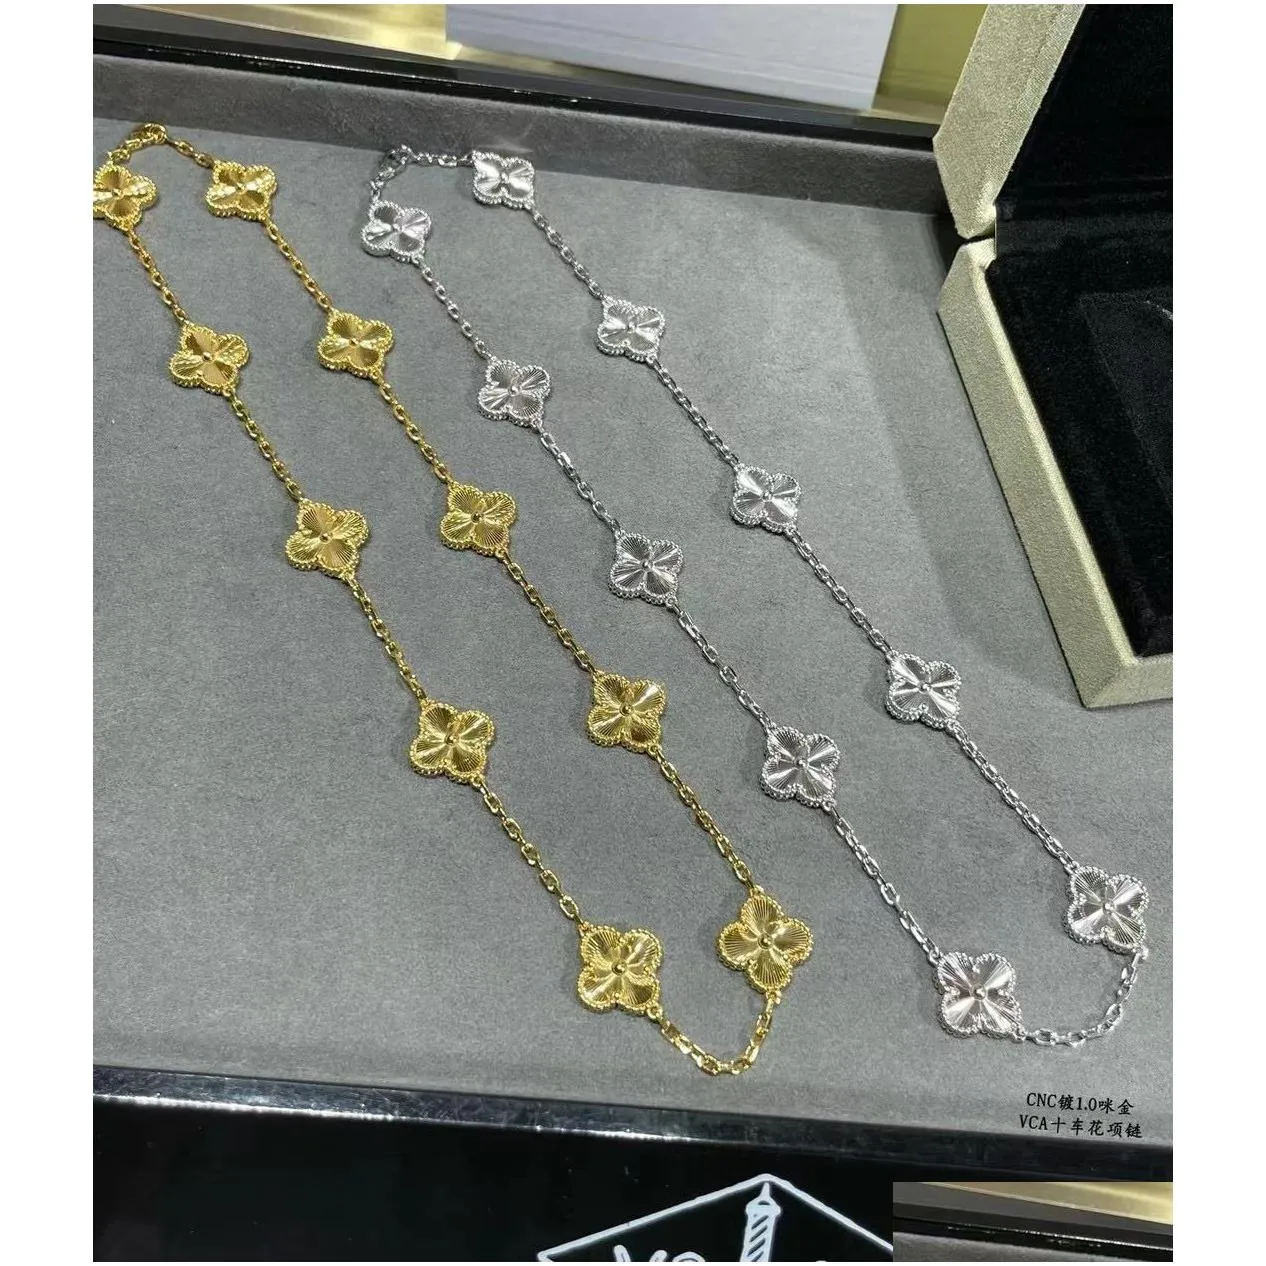 necklace bracelet earrings elegant elegant small pink heart agate pendant bracelet earrings gold rose gold silver 3 color set for